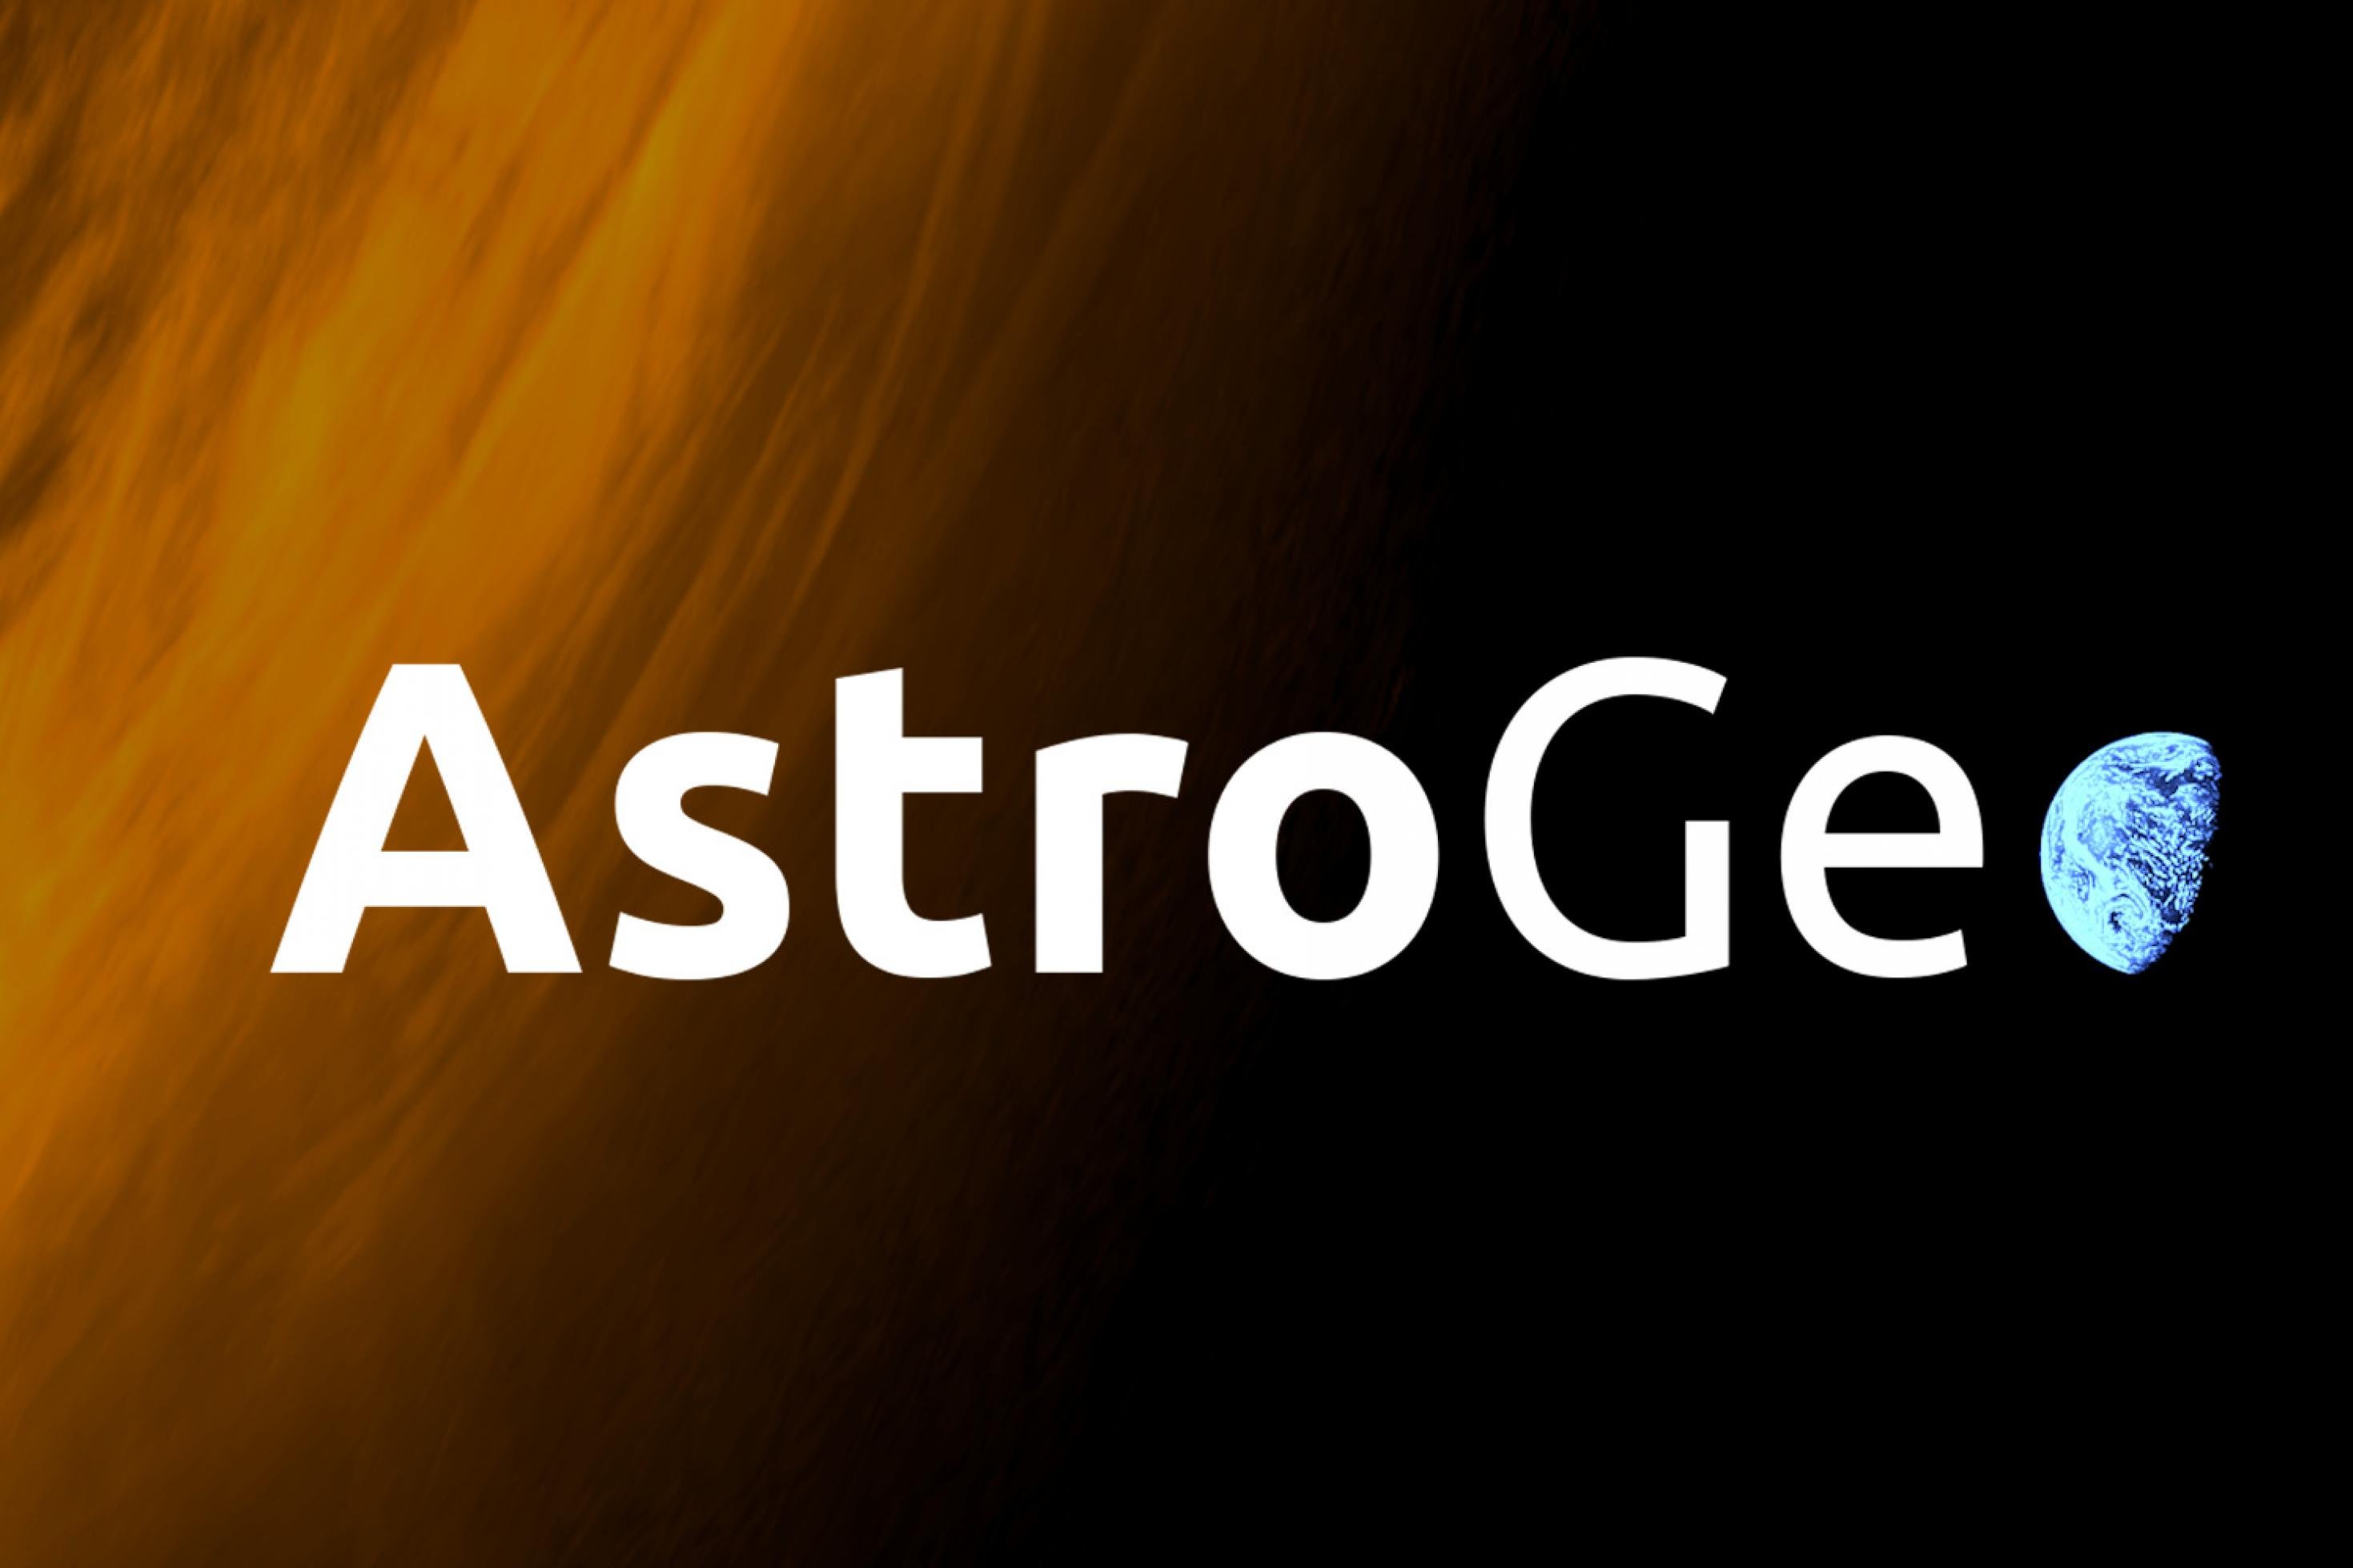 Logo des AstroGeo Podcast: angerissene Sonne, das „o“ von AstroGeo die Erde im Halbschatten.